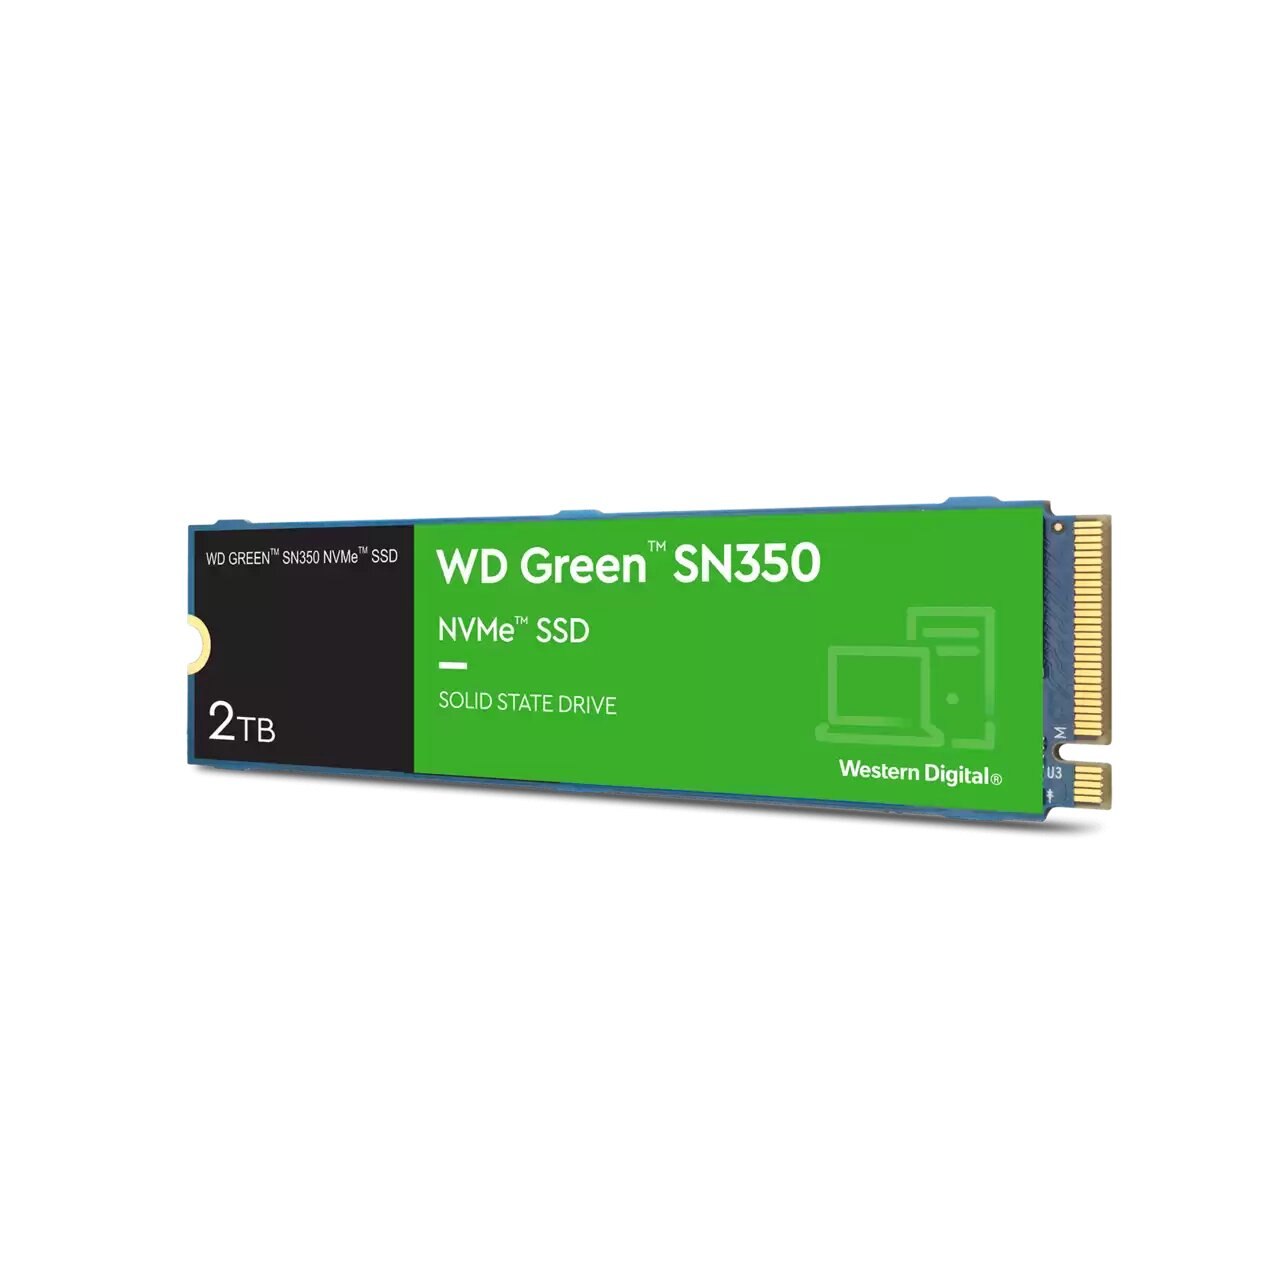 WESTERN DIGITAL WD Green SN350 2TB